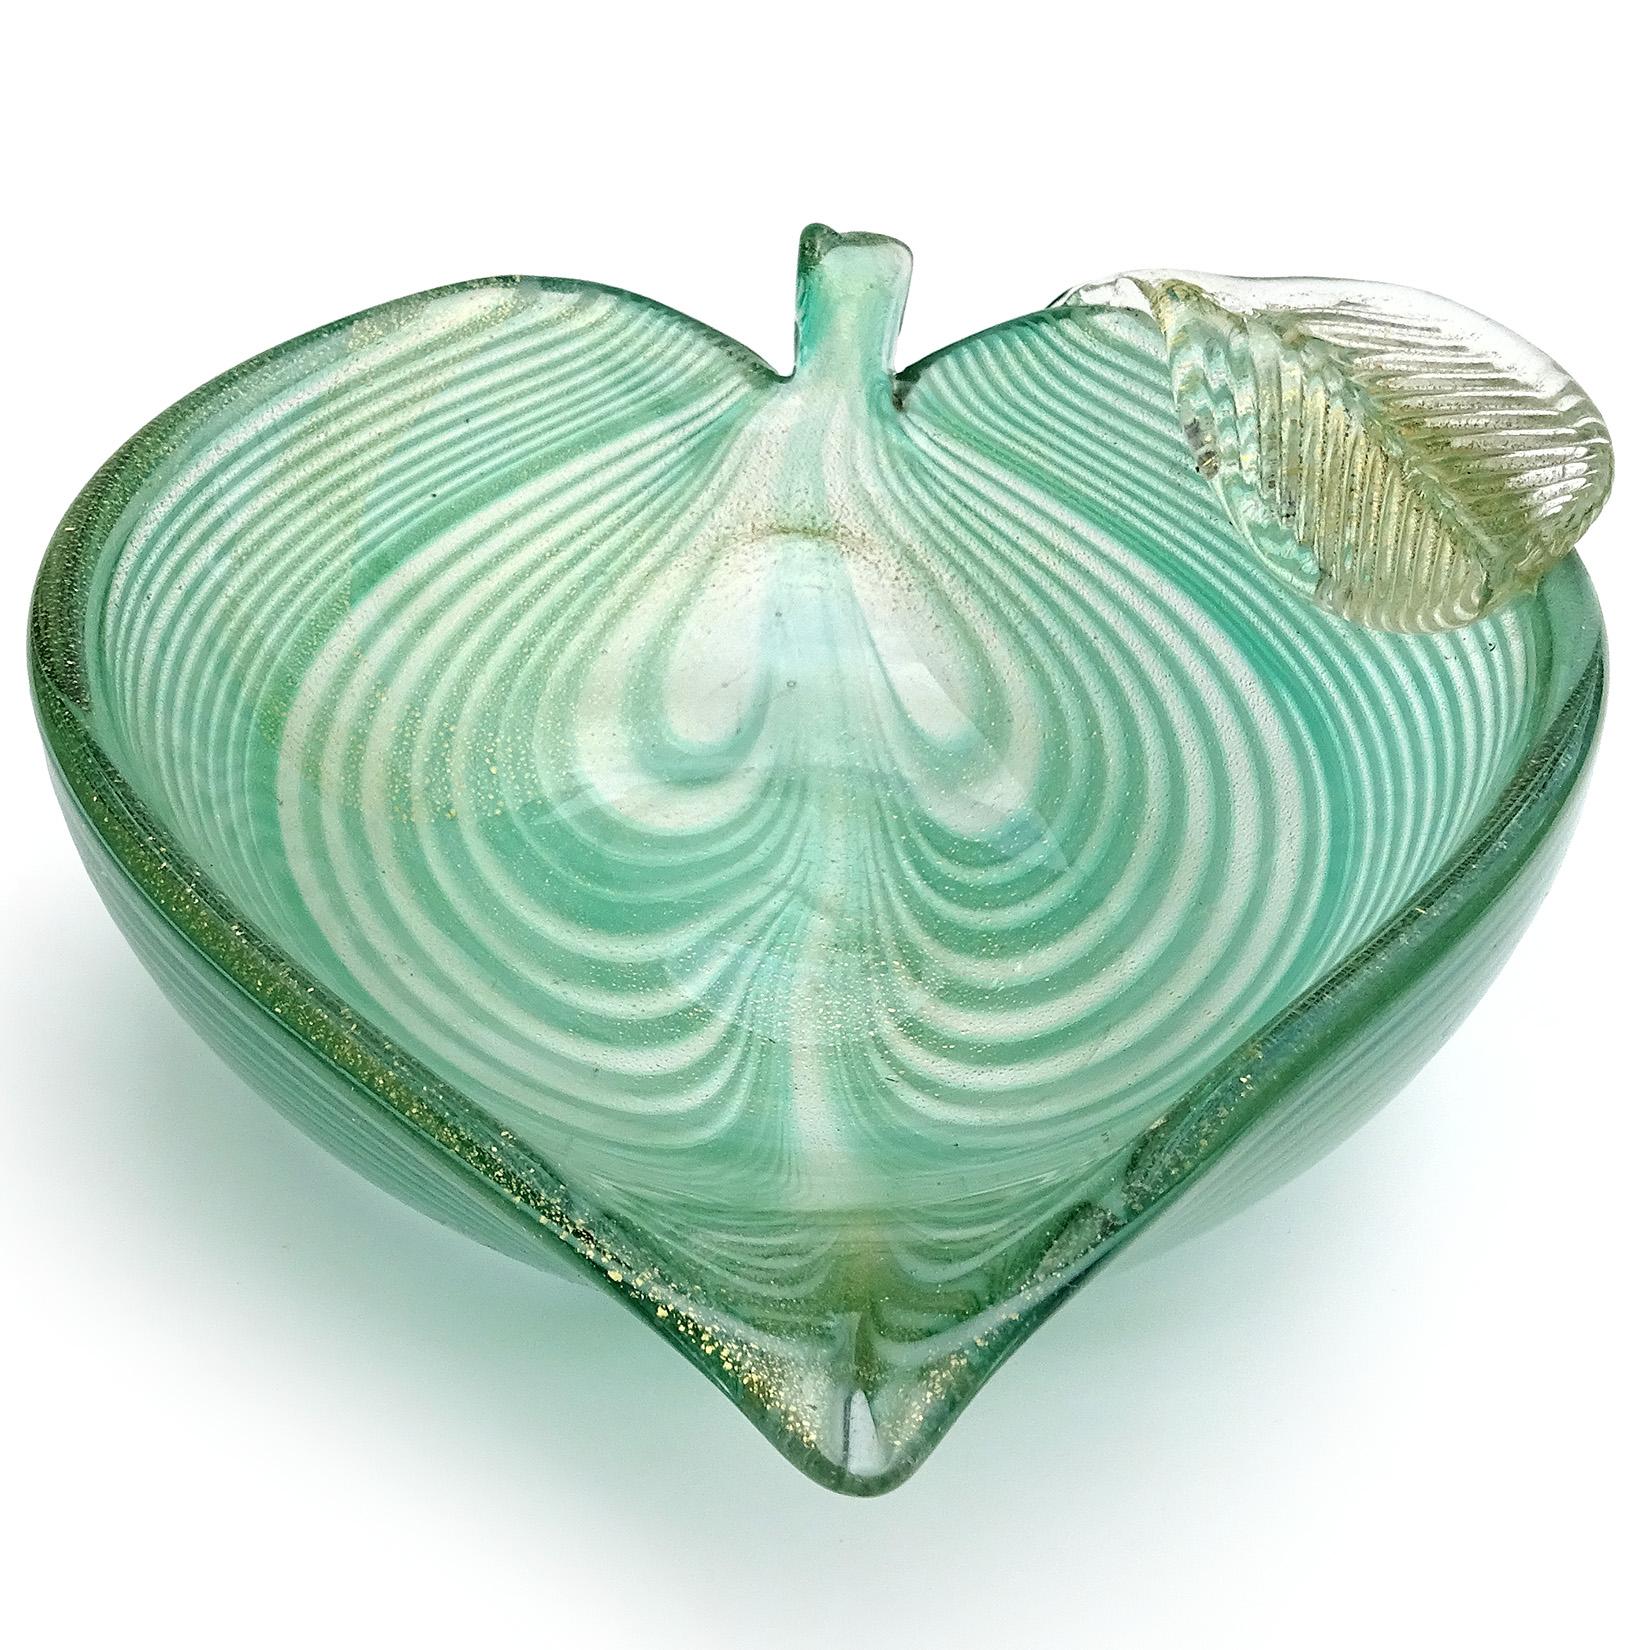 Schöne Vintage Murano mundgeblasen grün gezogen Feder und Blattgold italienische Kunst Glas Blatt geformt dekorative Schale. Geschaffen im 